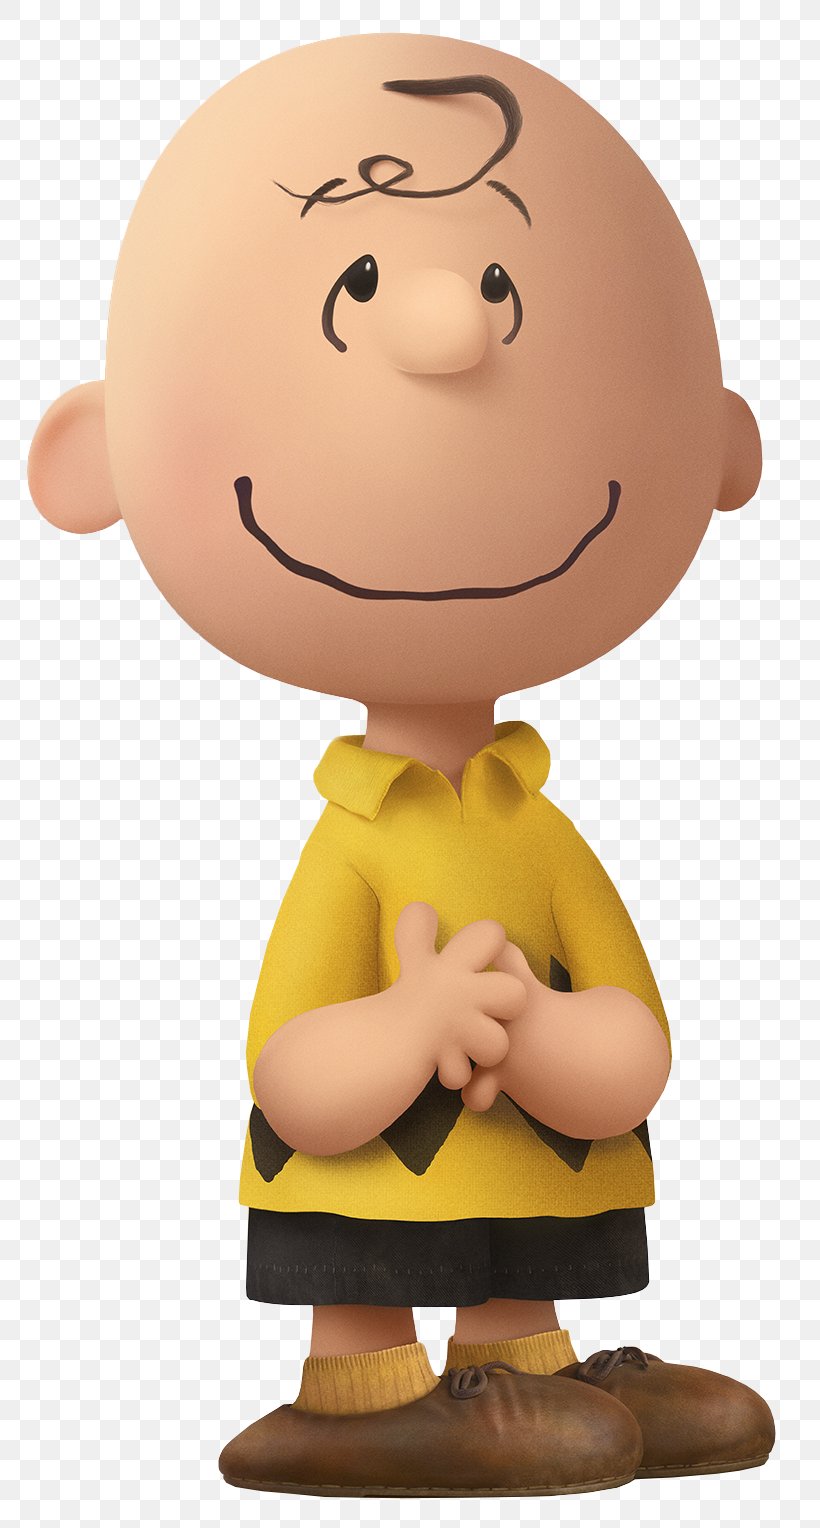 Charlie Brown Snoopy Linus Van Pelt Lucy Van Pelt Sally Brown, PNG, 798x1528px, Charlie Brown, Animation, Cartoon, Charlie Brown And Snoopy Show, Figurine Download Free